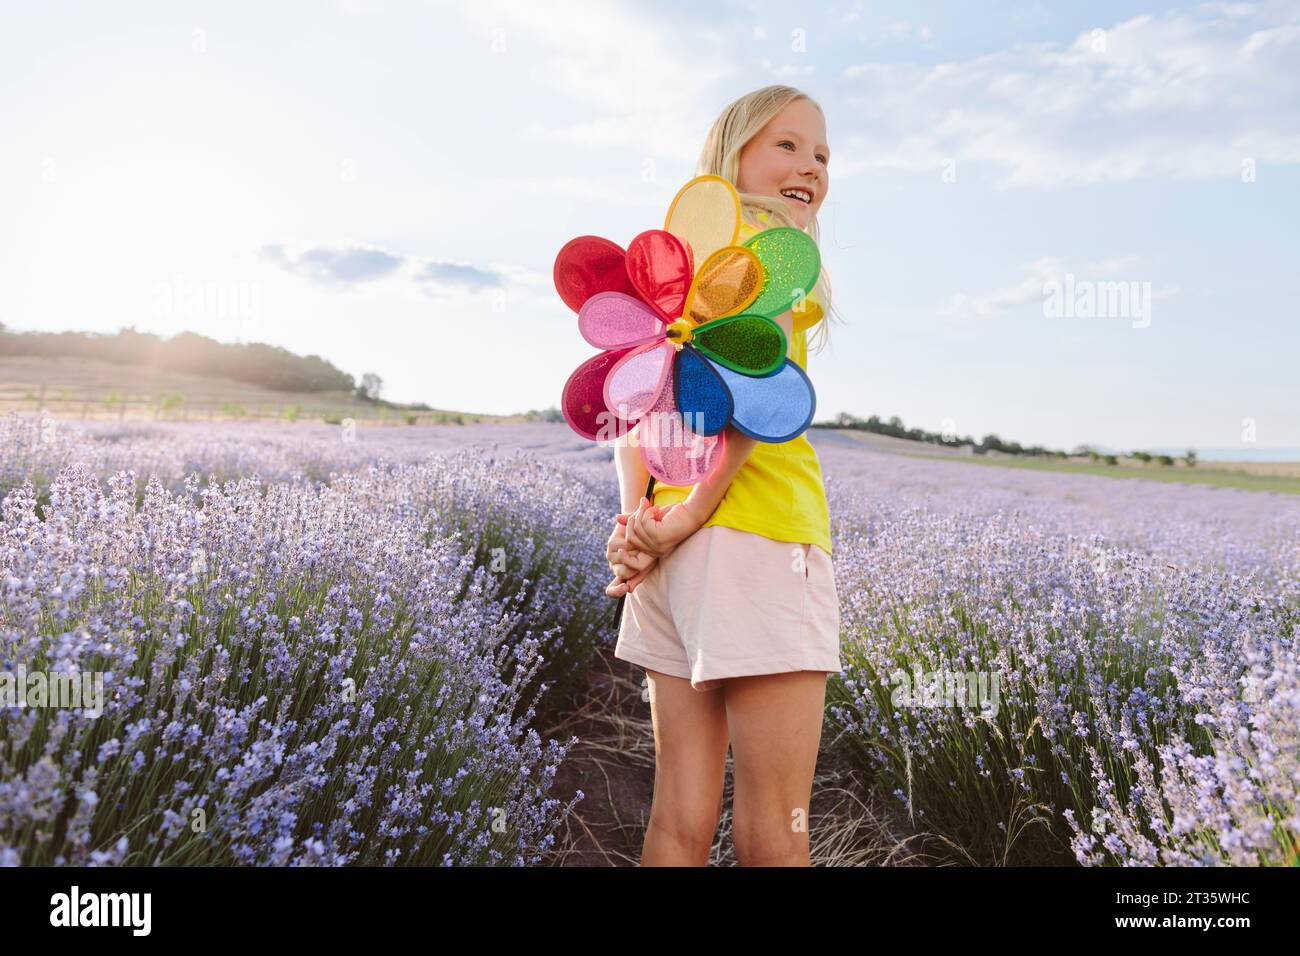 Fille blonde tenant jouet vibrant de roue d'épingle dans le champ de lavande Banque D'Images